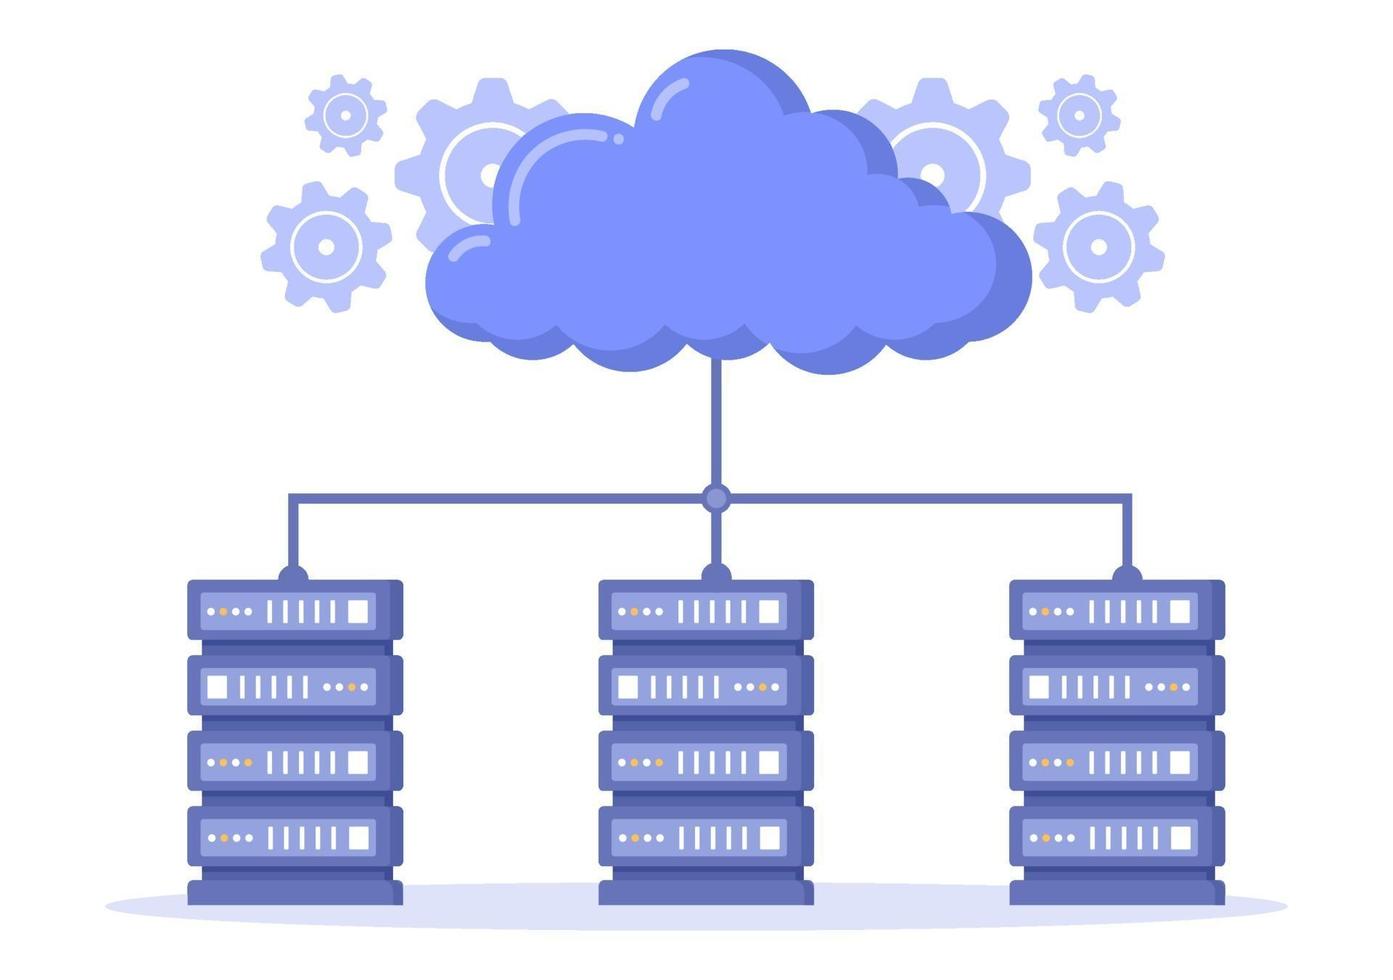 Abbildung des Cloud-Speicherdienstes für Hosting oder Rechenzentrum, Herunterladen, Hochladen, Verwalten und Technologie von Online-Dateien vektor